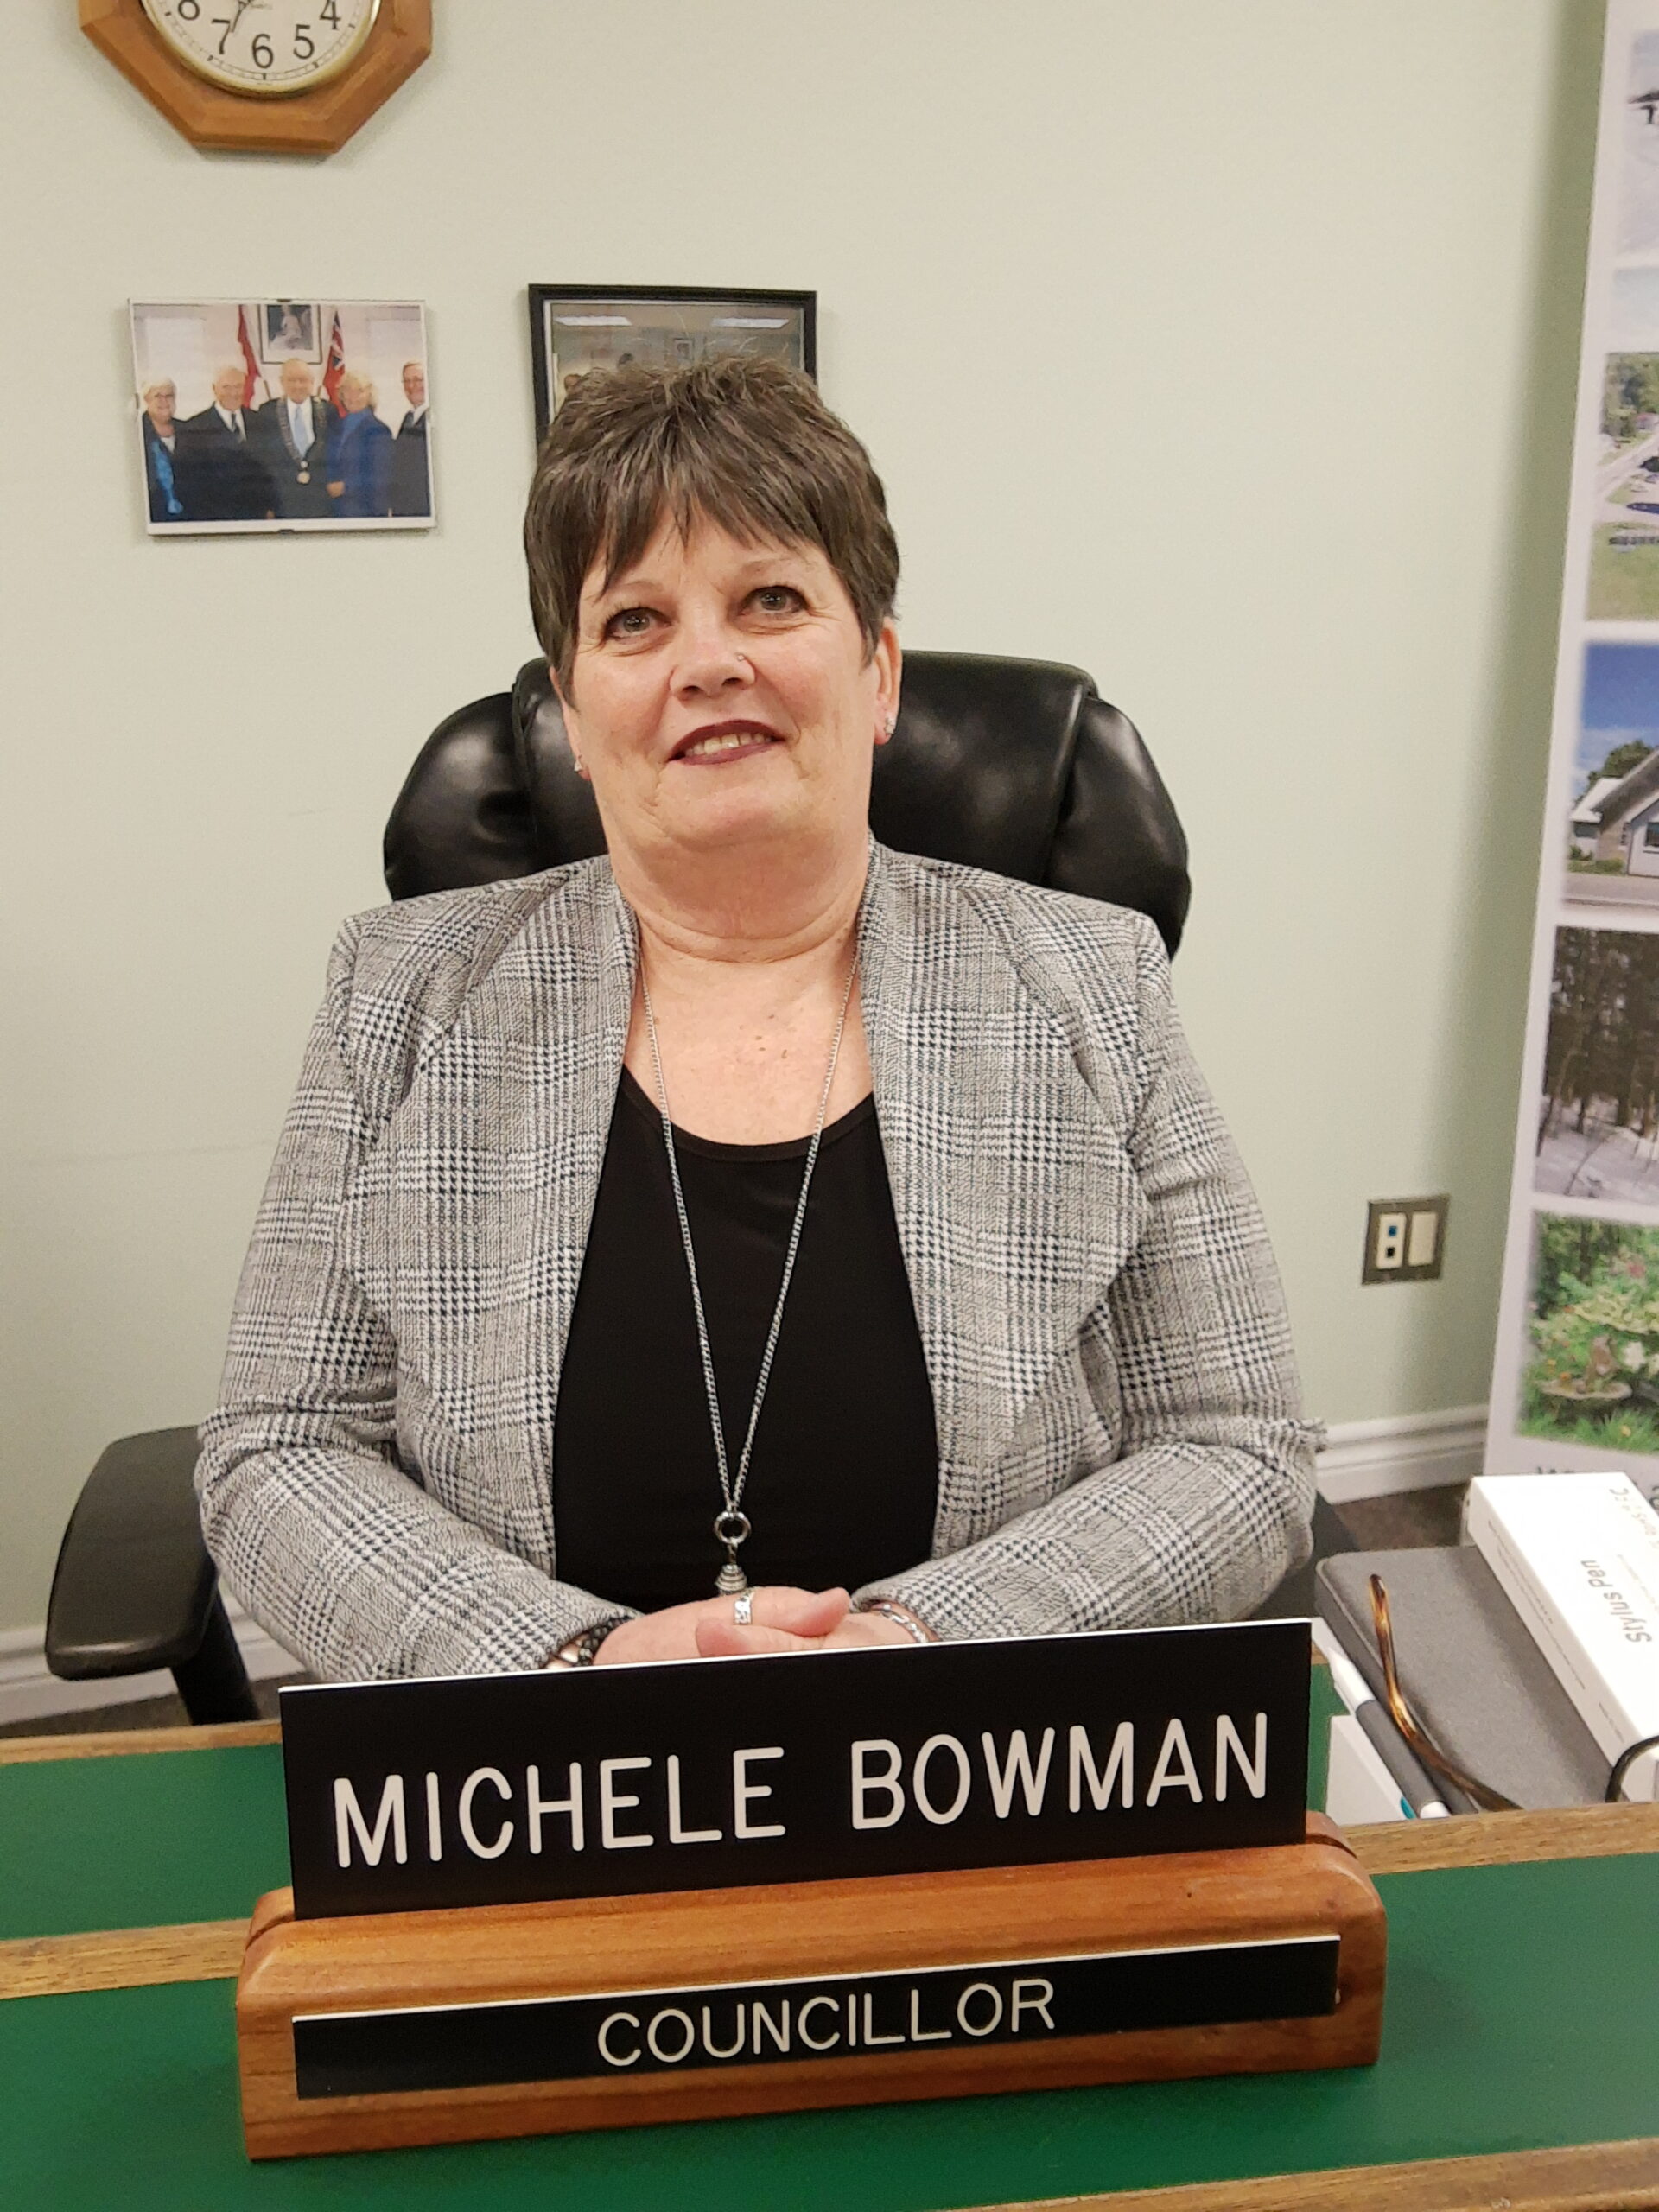 Councillor Michele Bowman